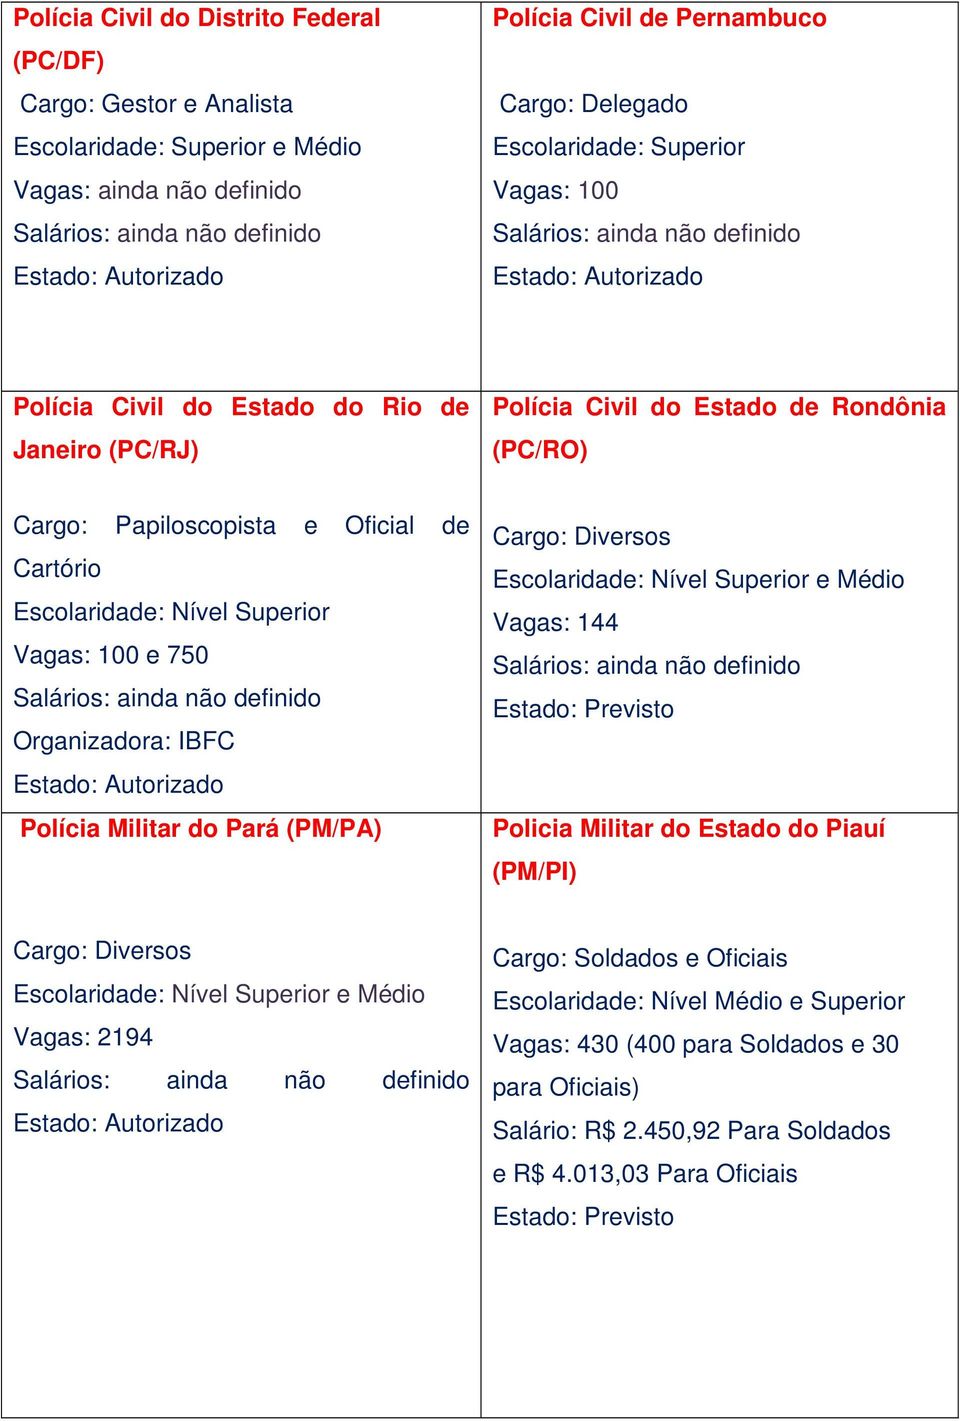 Cartório Vagas: 100 e 750 Organizadora: IBFC Polícia Militar do Pará (PM/PA) e Médio Vagas: 144 Policia Militar do Estado do Piauí (PM/PI) e